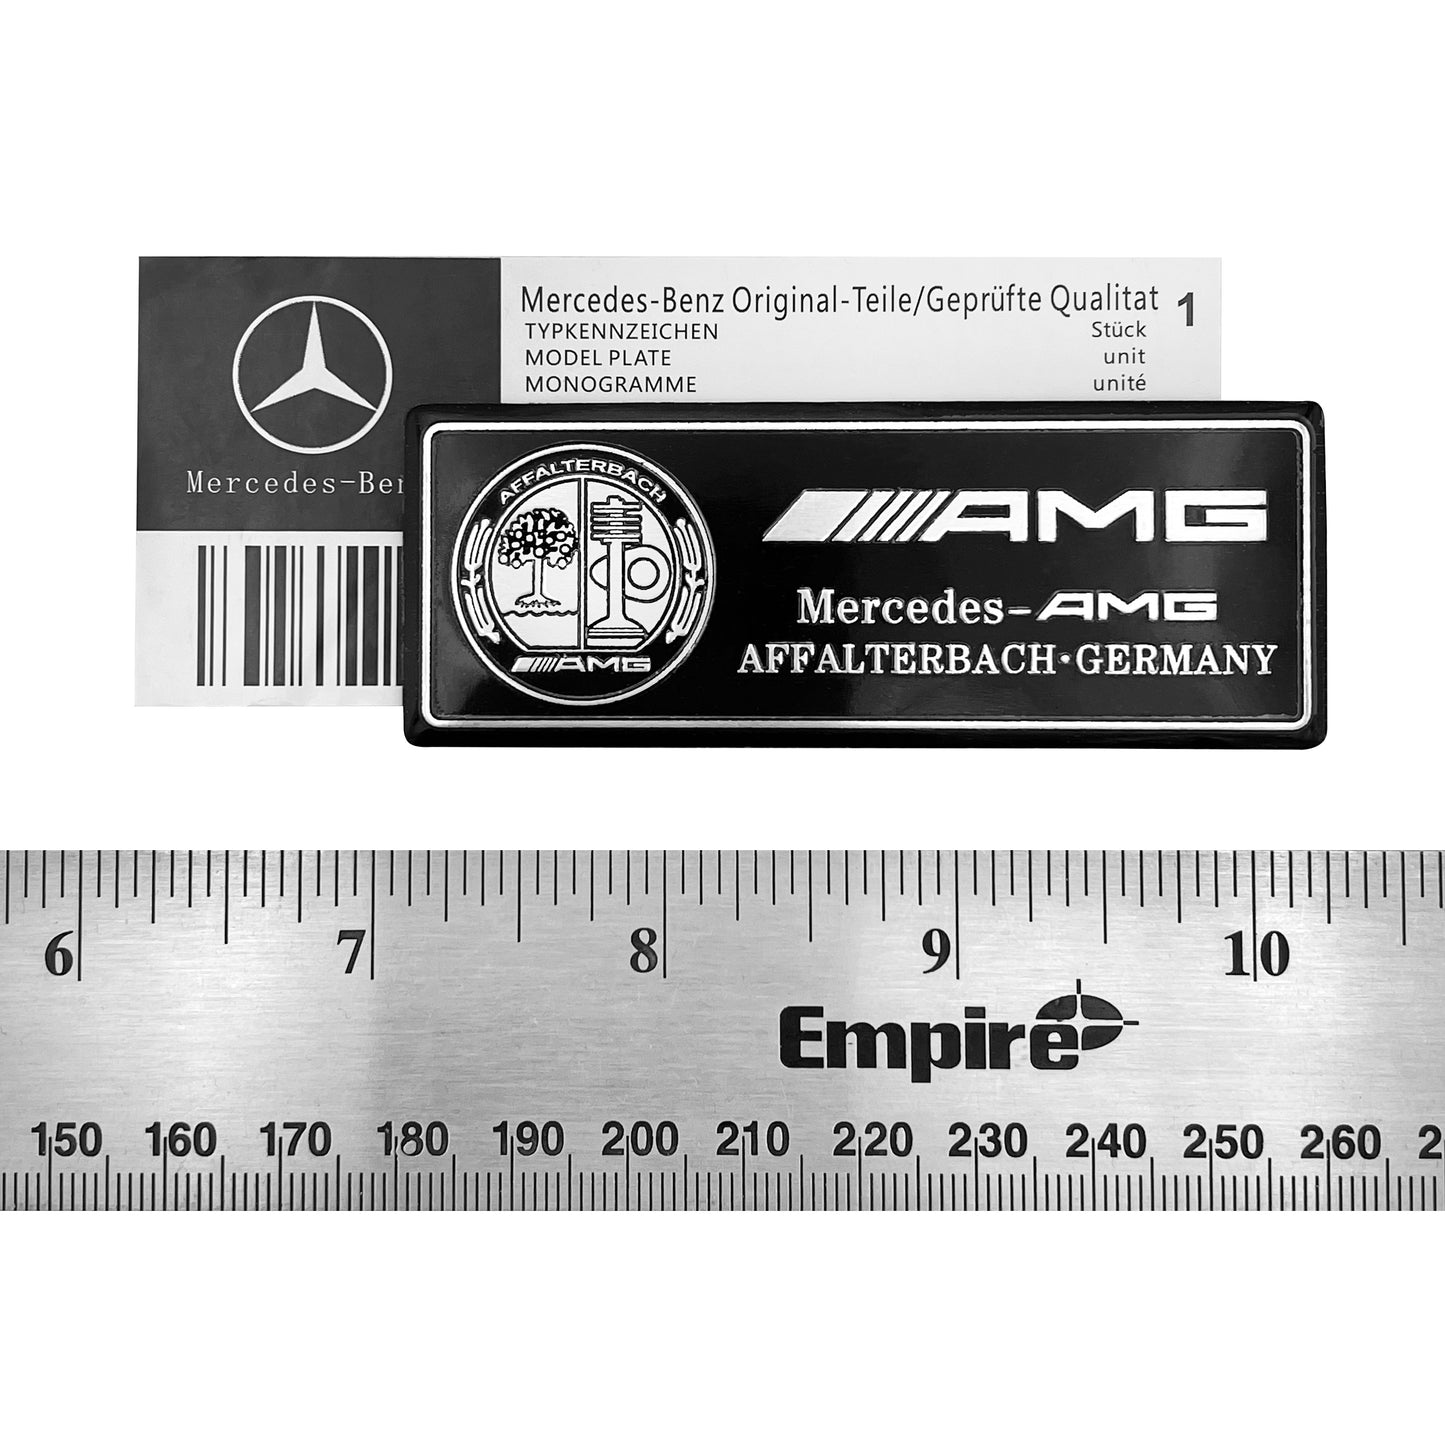 Mercedes-Benz AMG Affalterbach Black Chrome Aluminum Emblem Special Edition Interior Badge